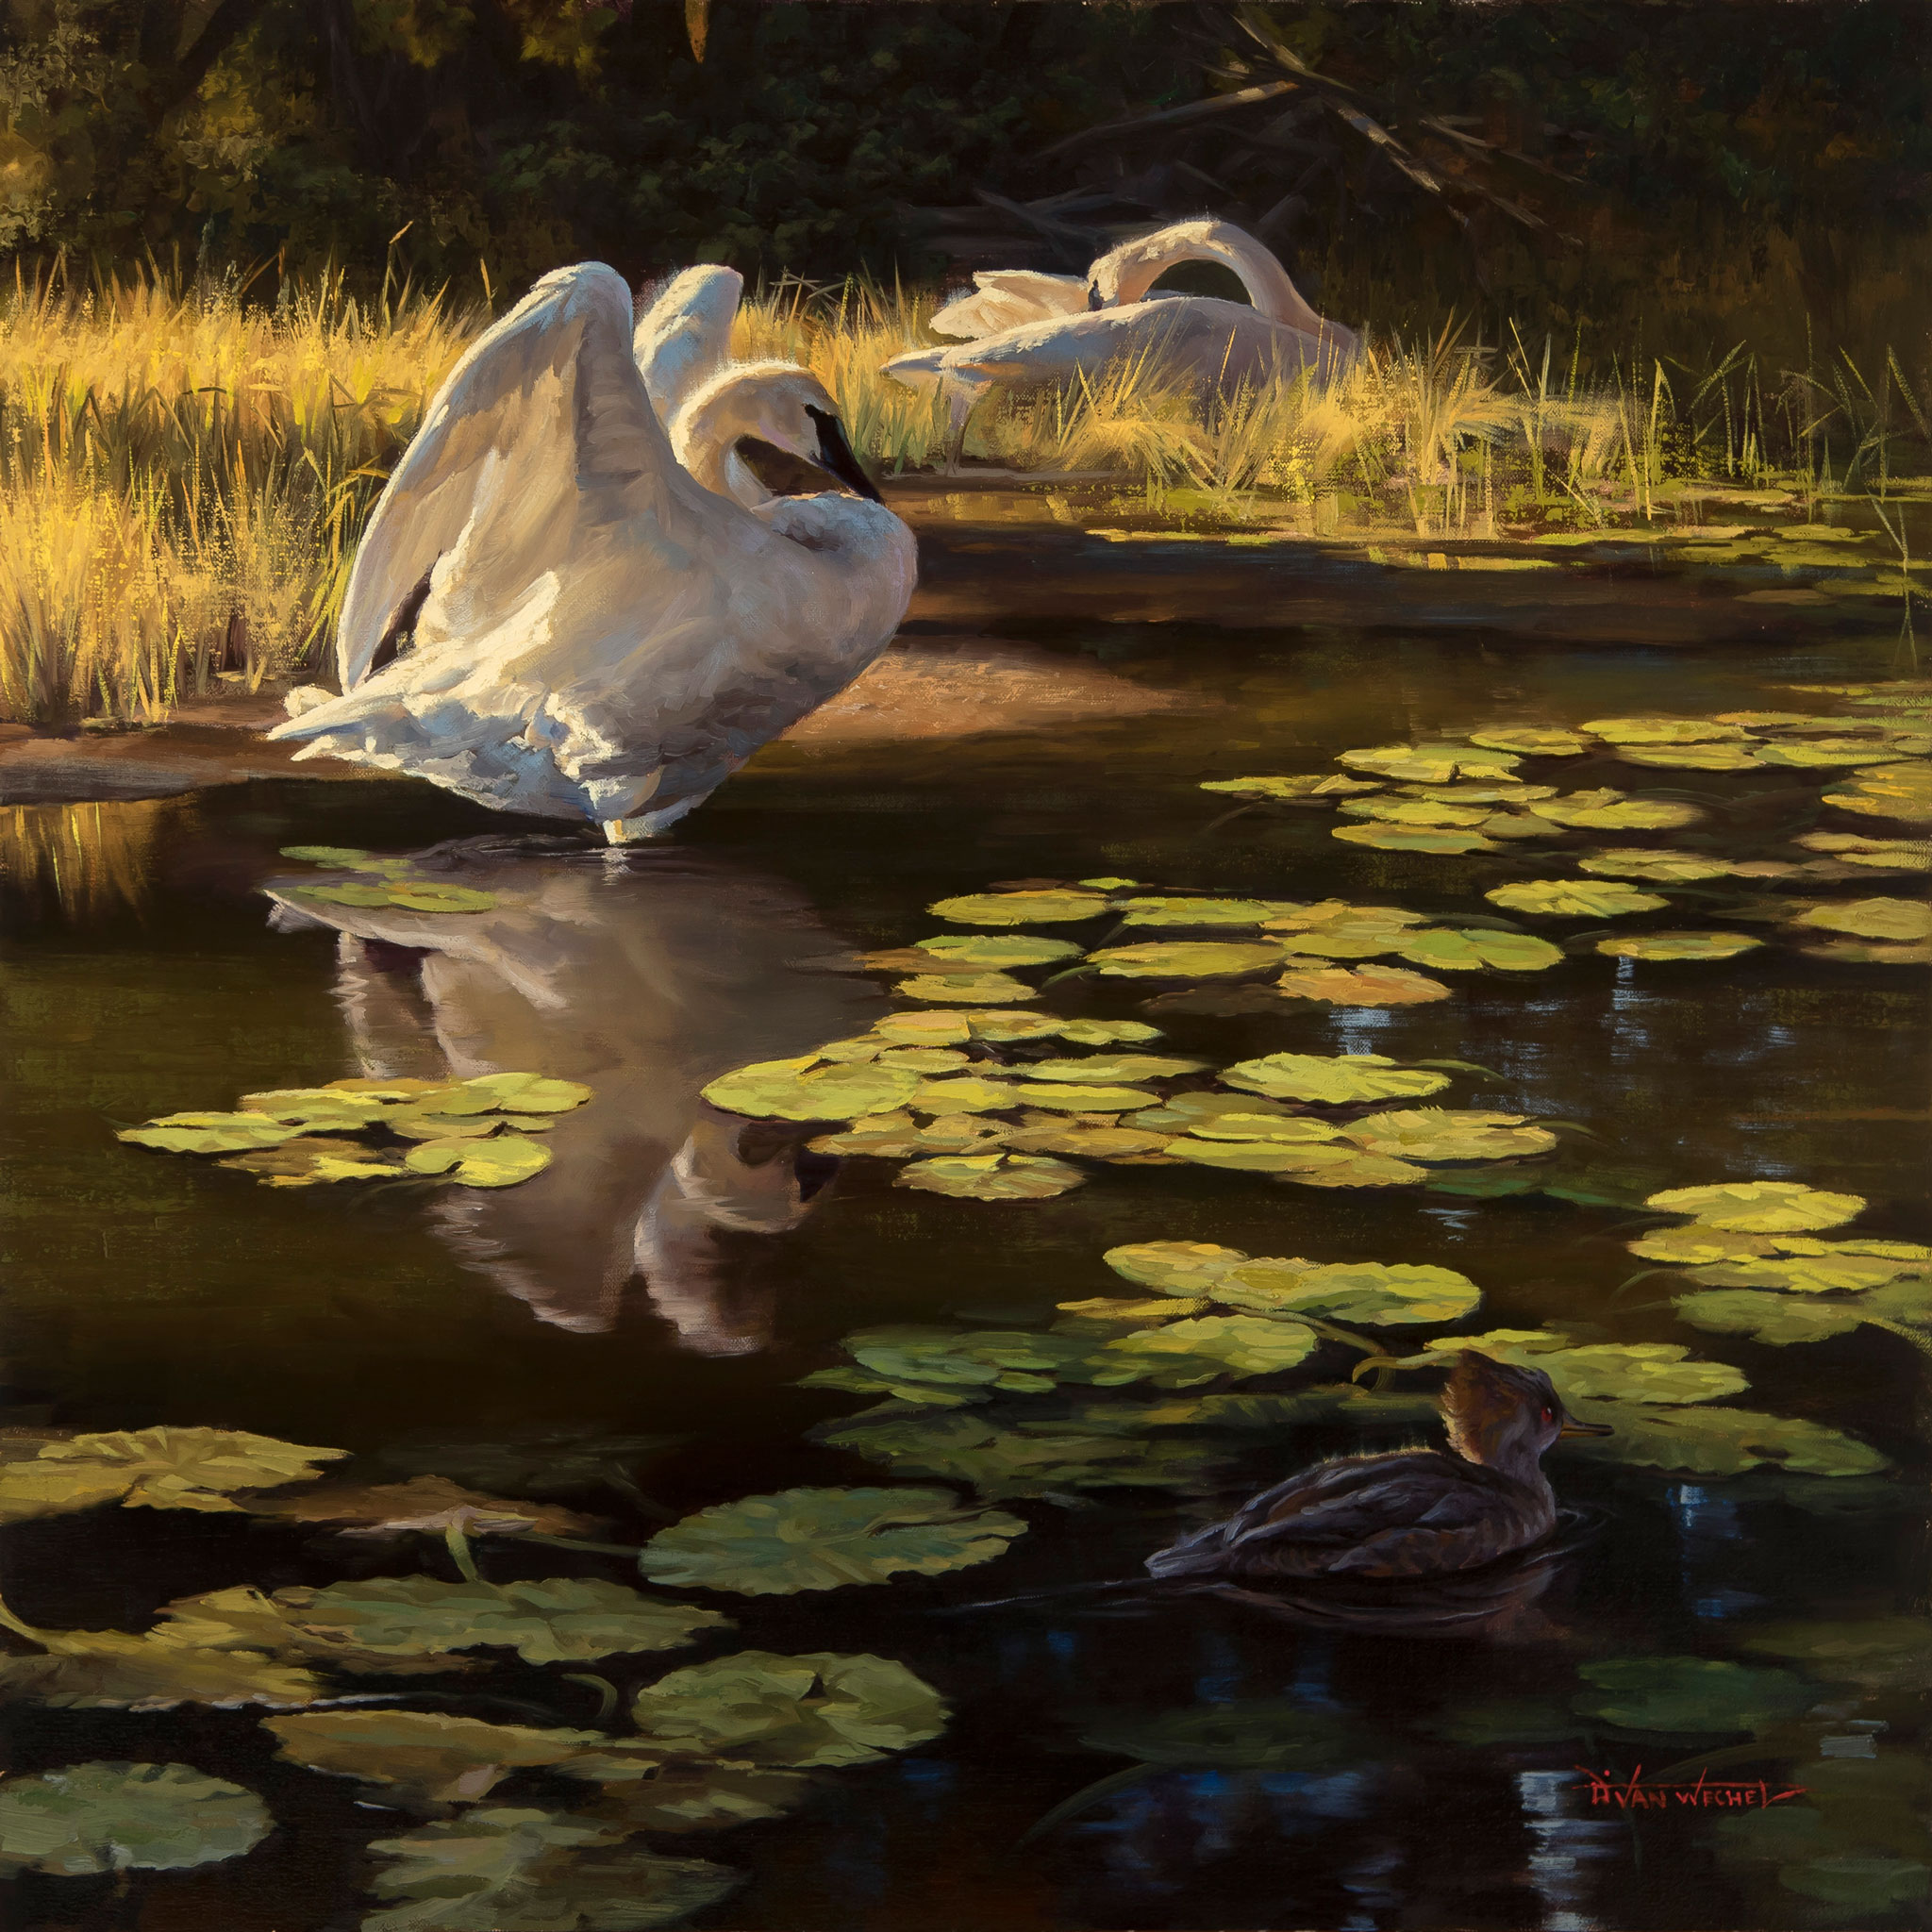 Contemporary Realism Wildlife Art - Dustin Van Wechel - RealismToday.com